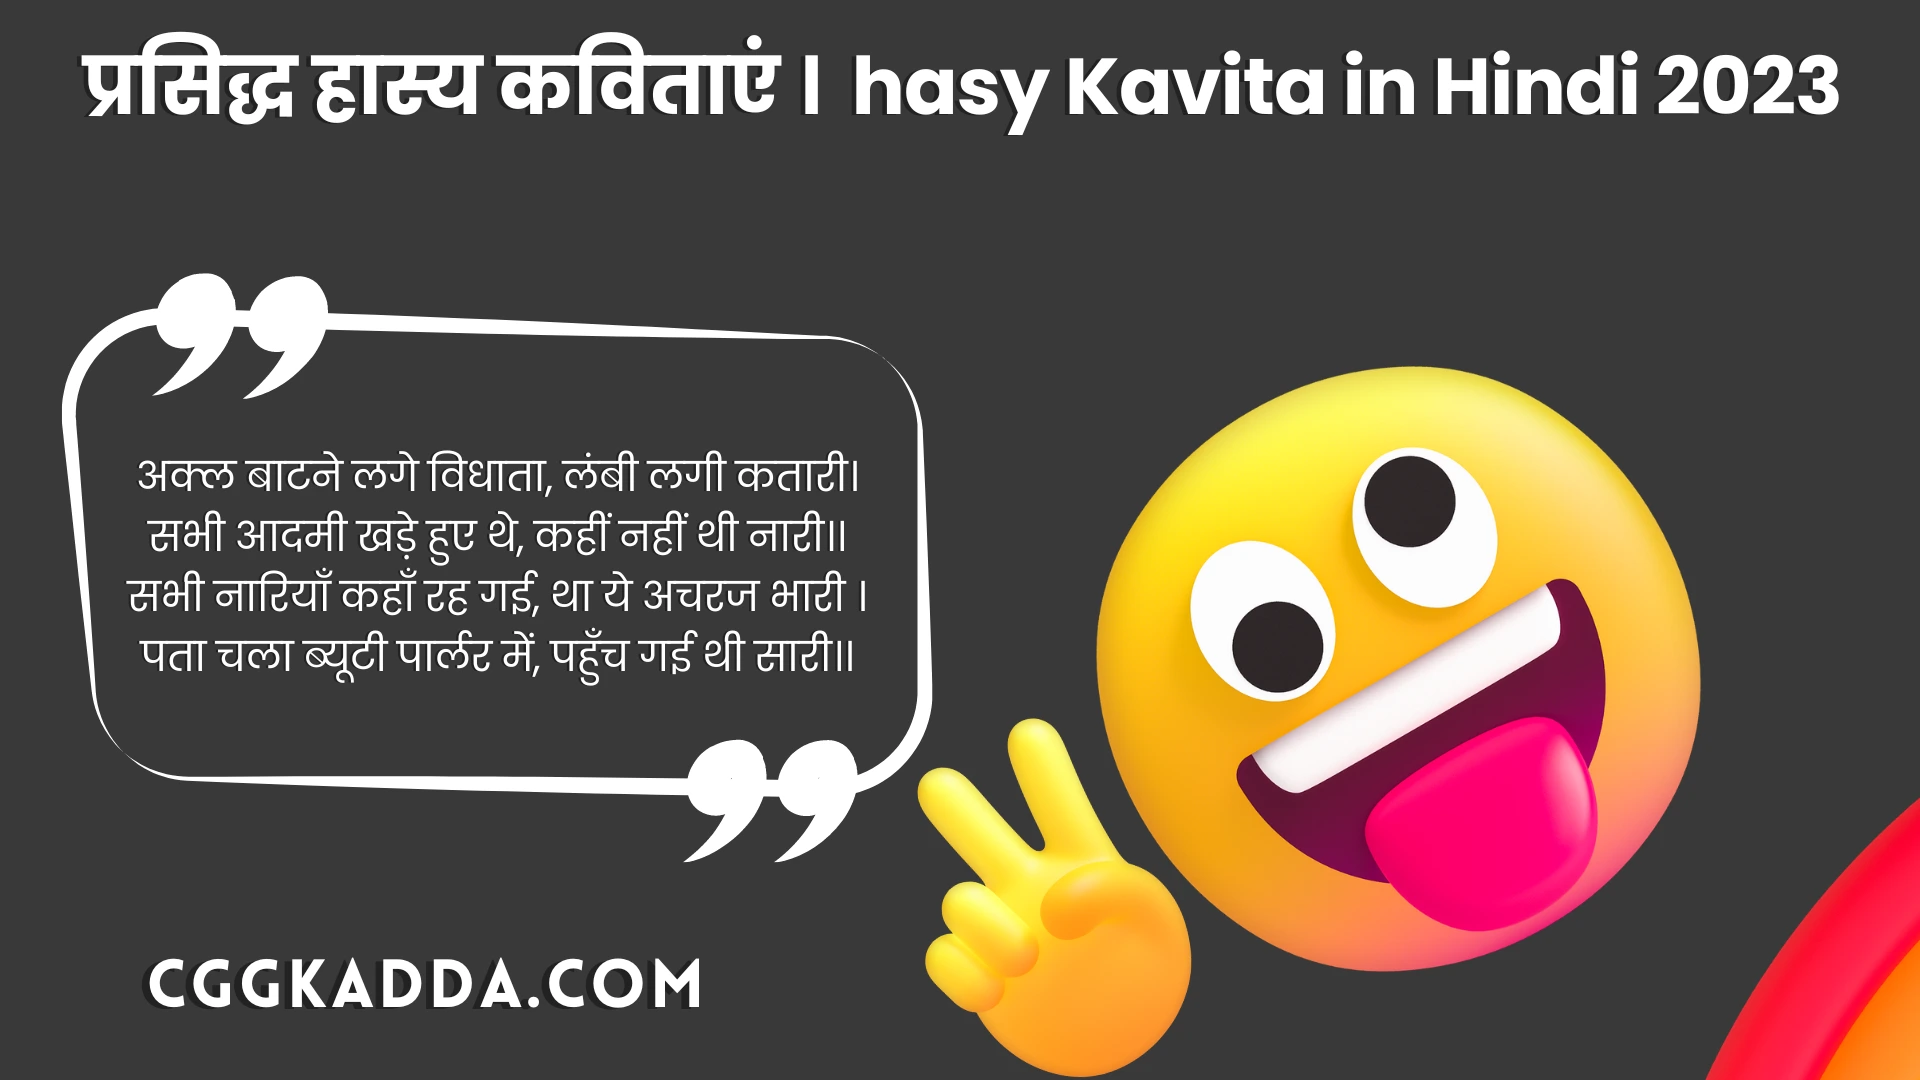 हास्य दिवस पर कविता । hasya kavita in hindi 2023 (1)